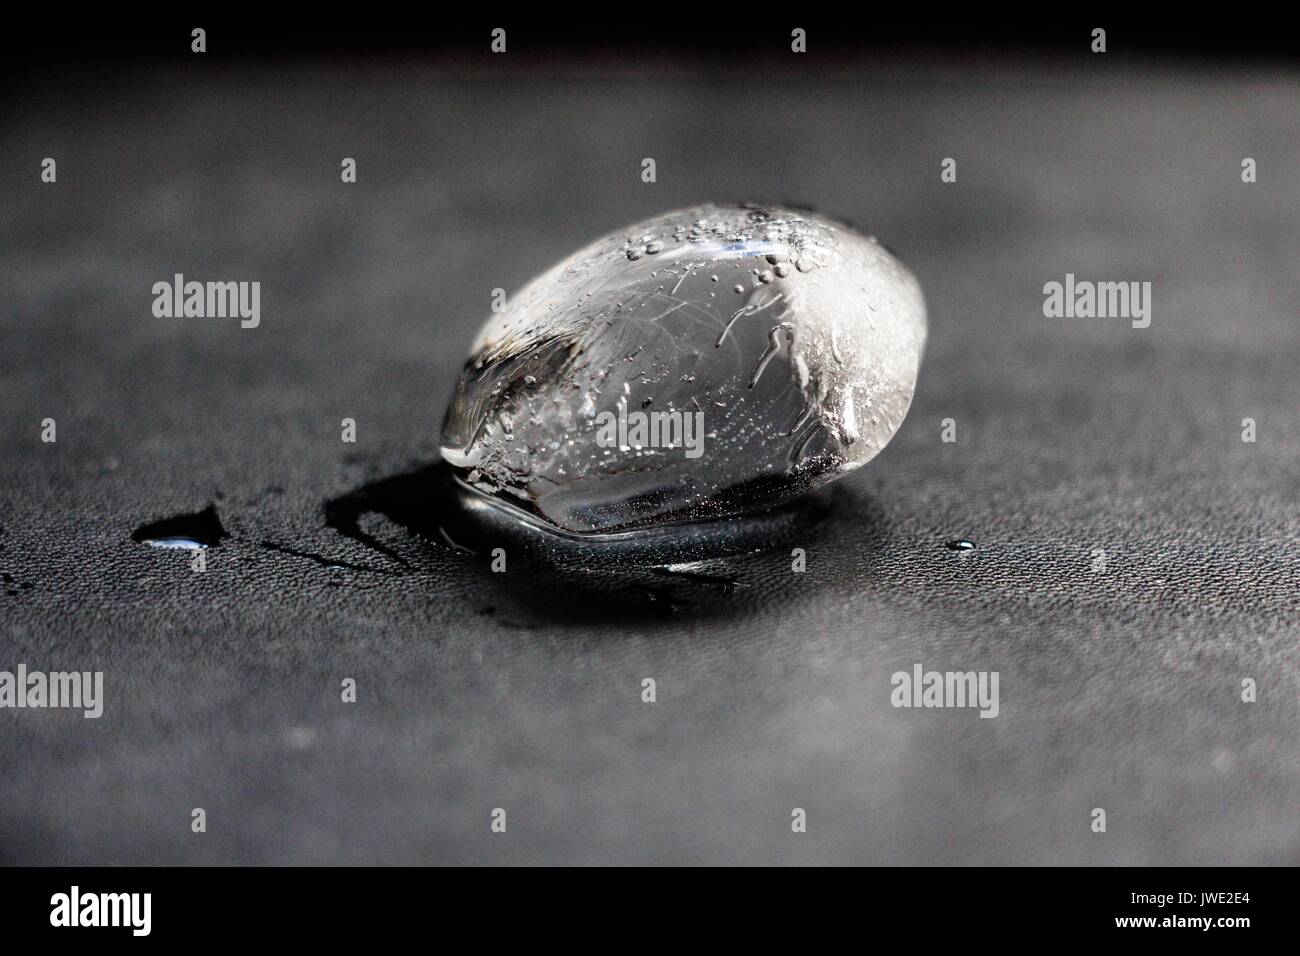 Un pezzo di ghiaccio che appena ha cominciato a fondere giace su una superficie nera. Foto Stock